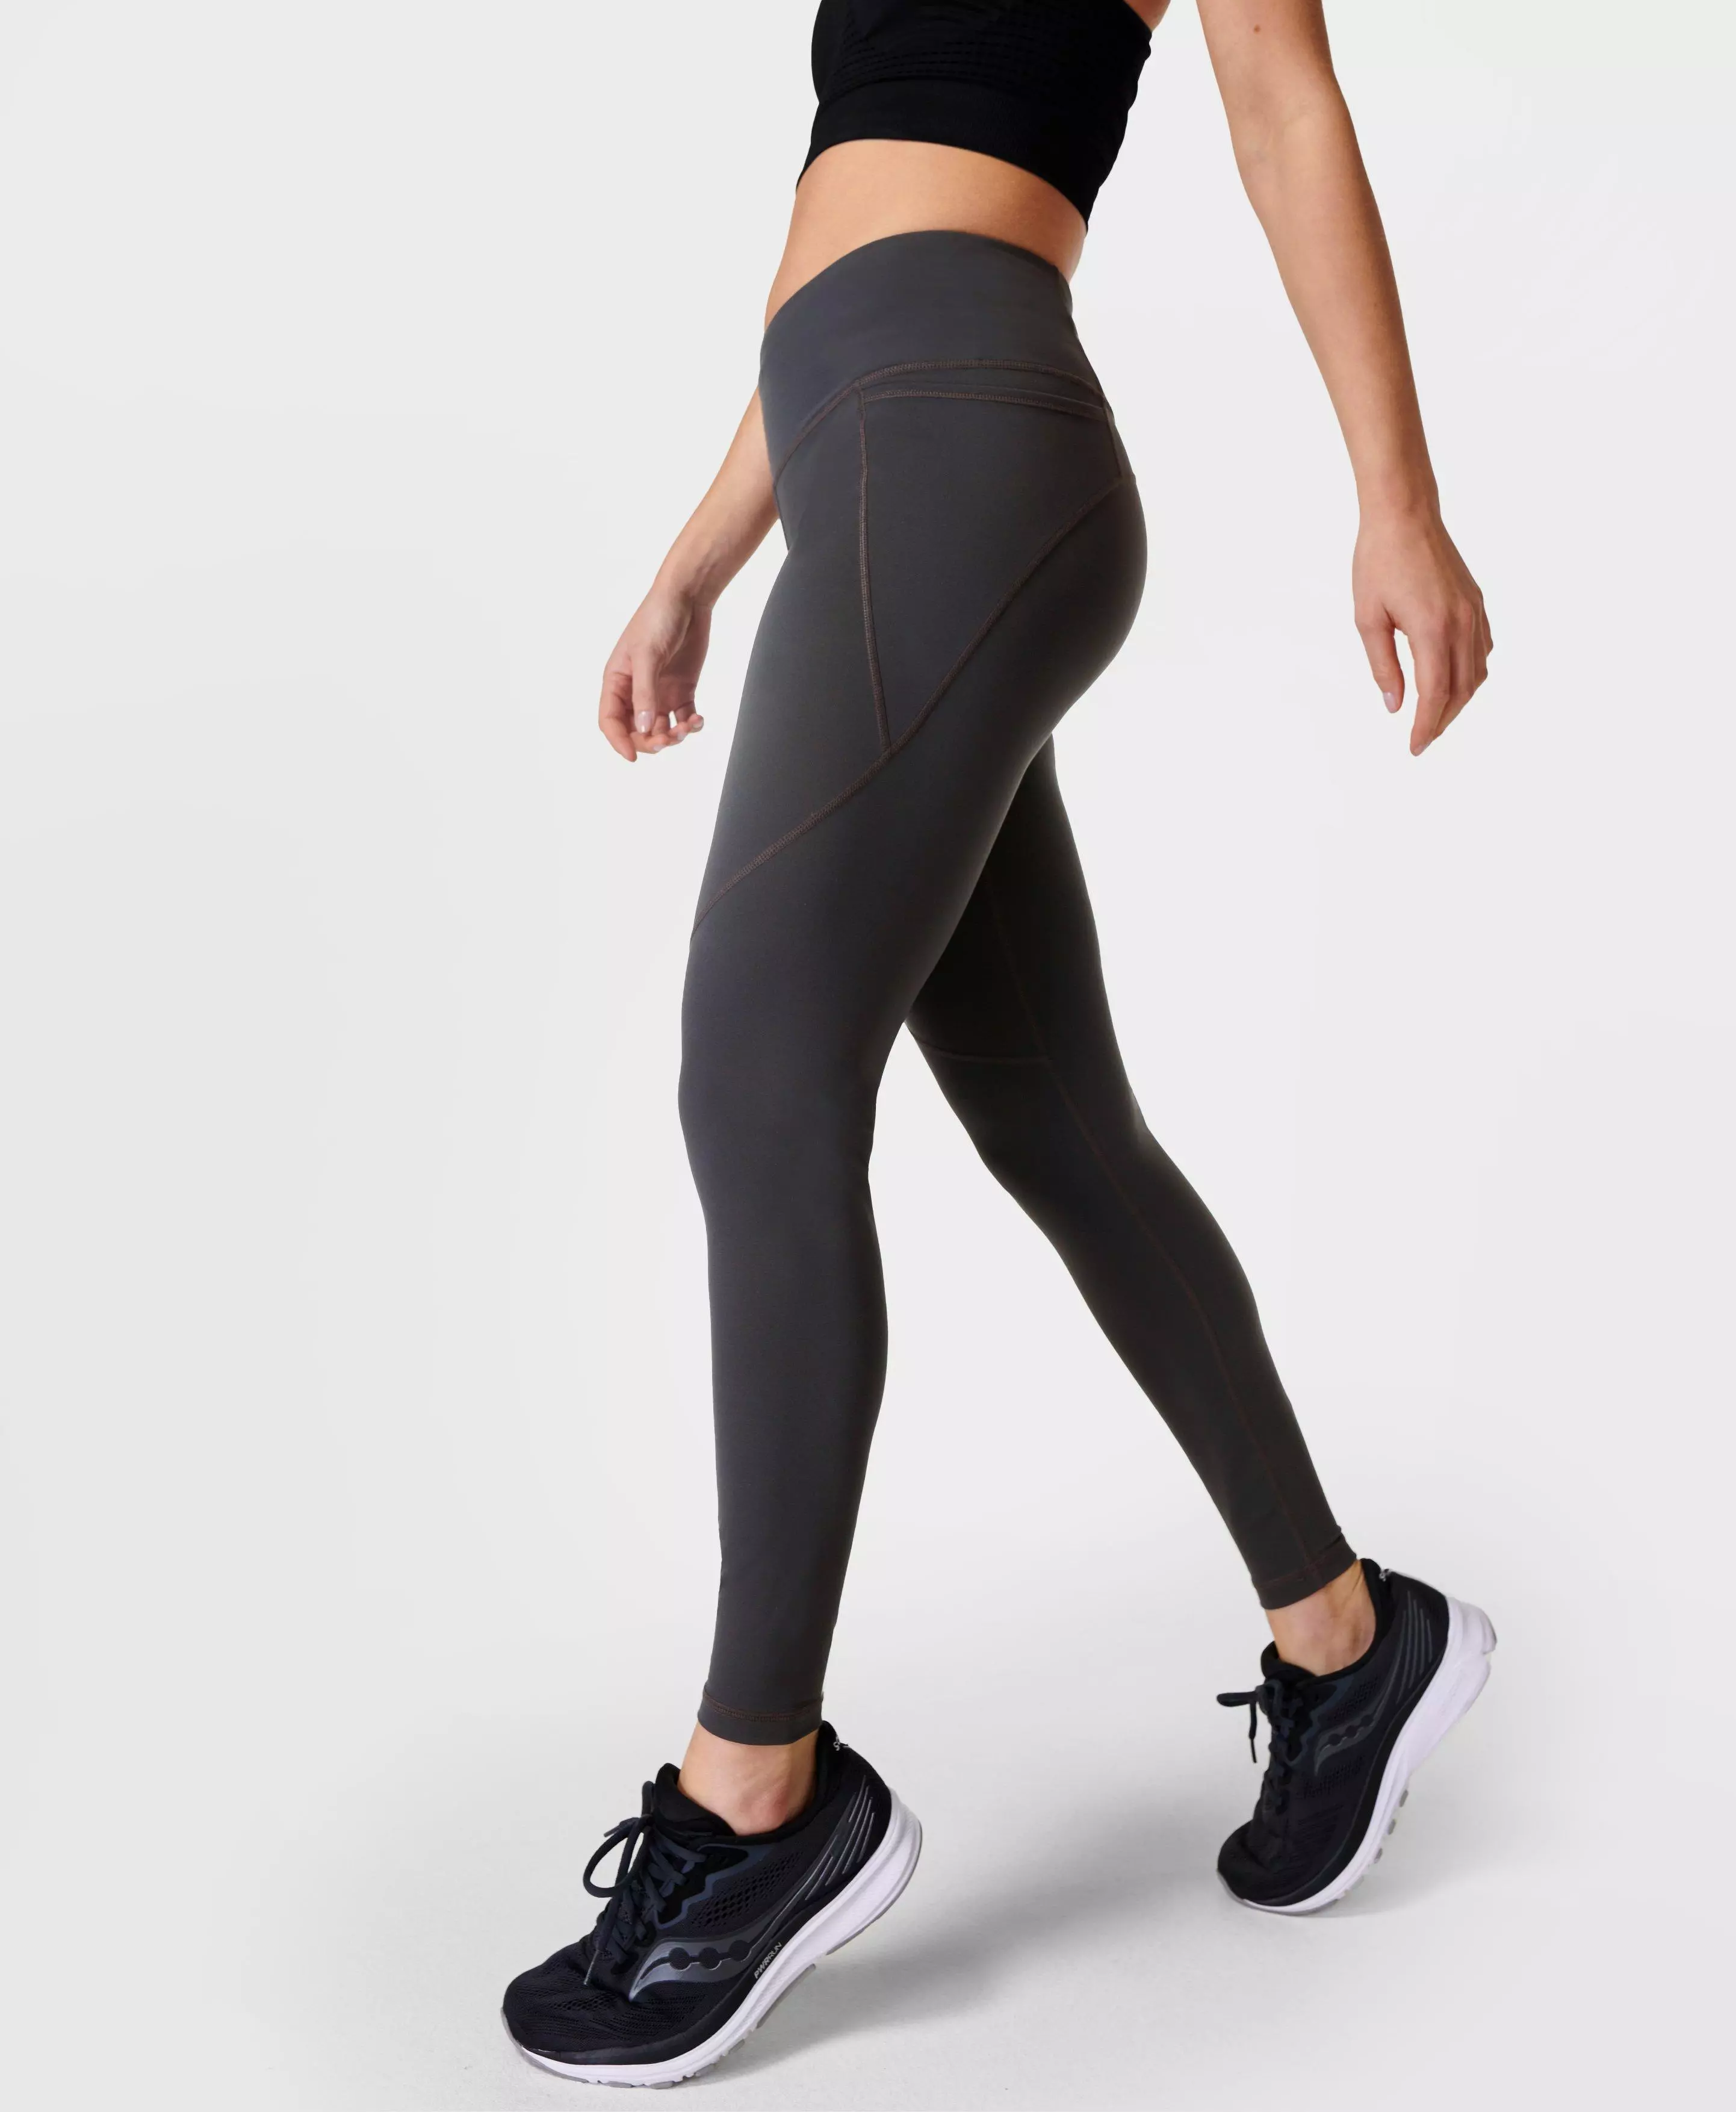 Pockets For Women - Sweaty Betty Power Sports Leggings, Grey, Women's